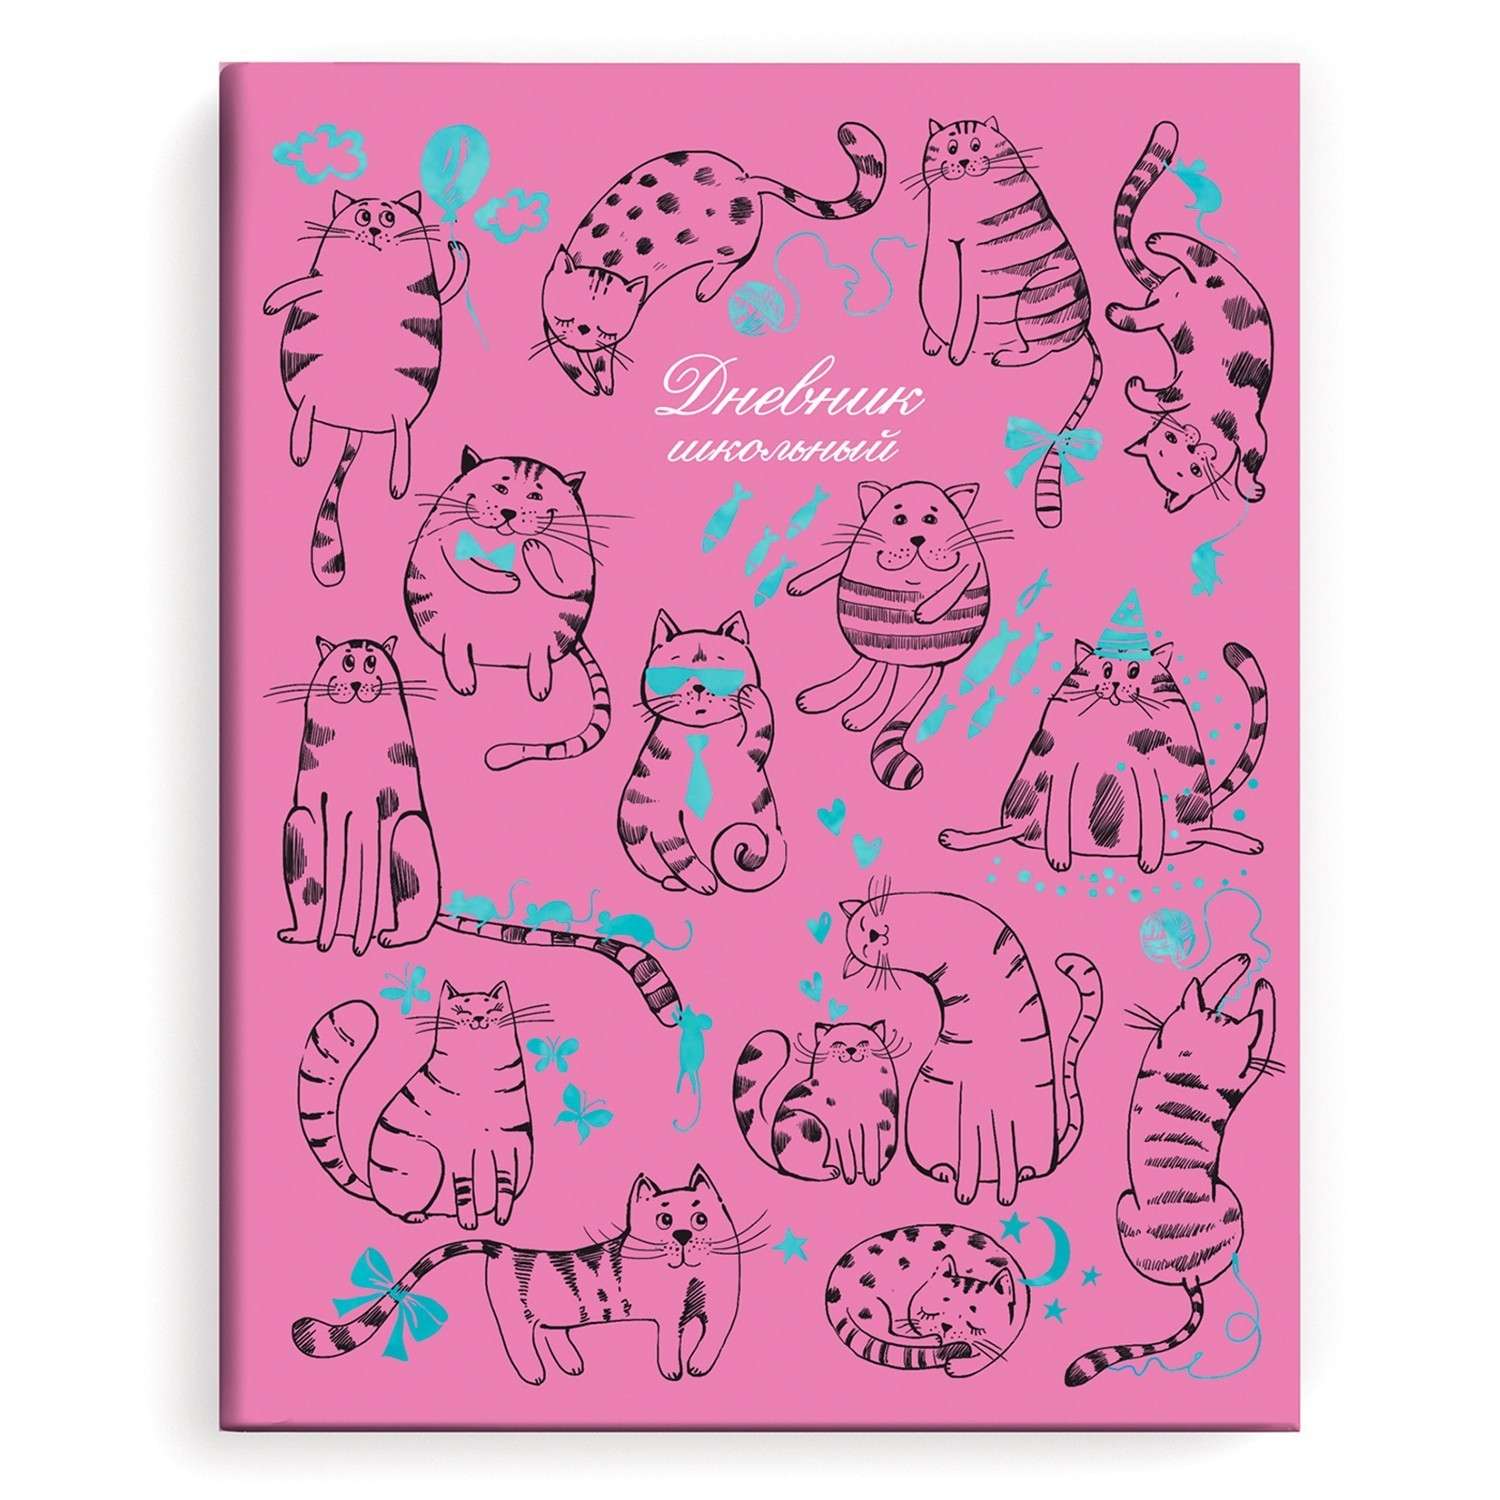 Дневник школьный Феникс + Коты на розовом 49455 - фото 1